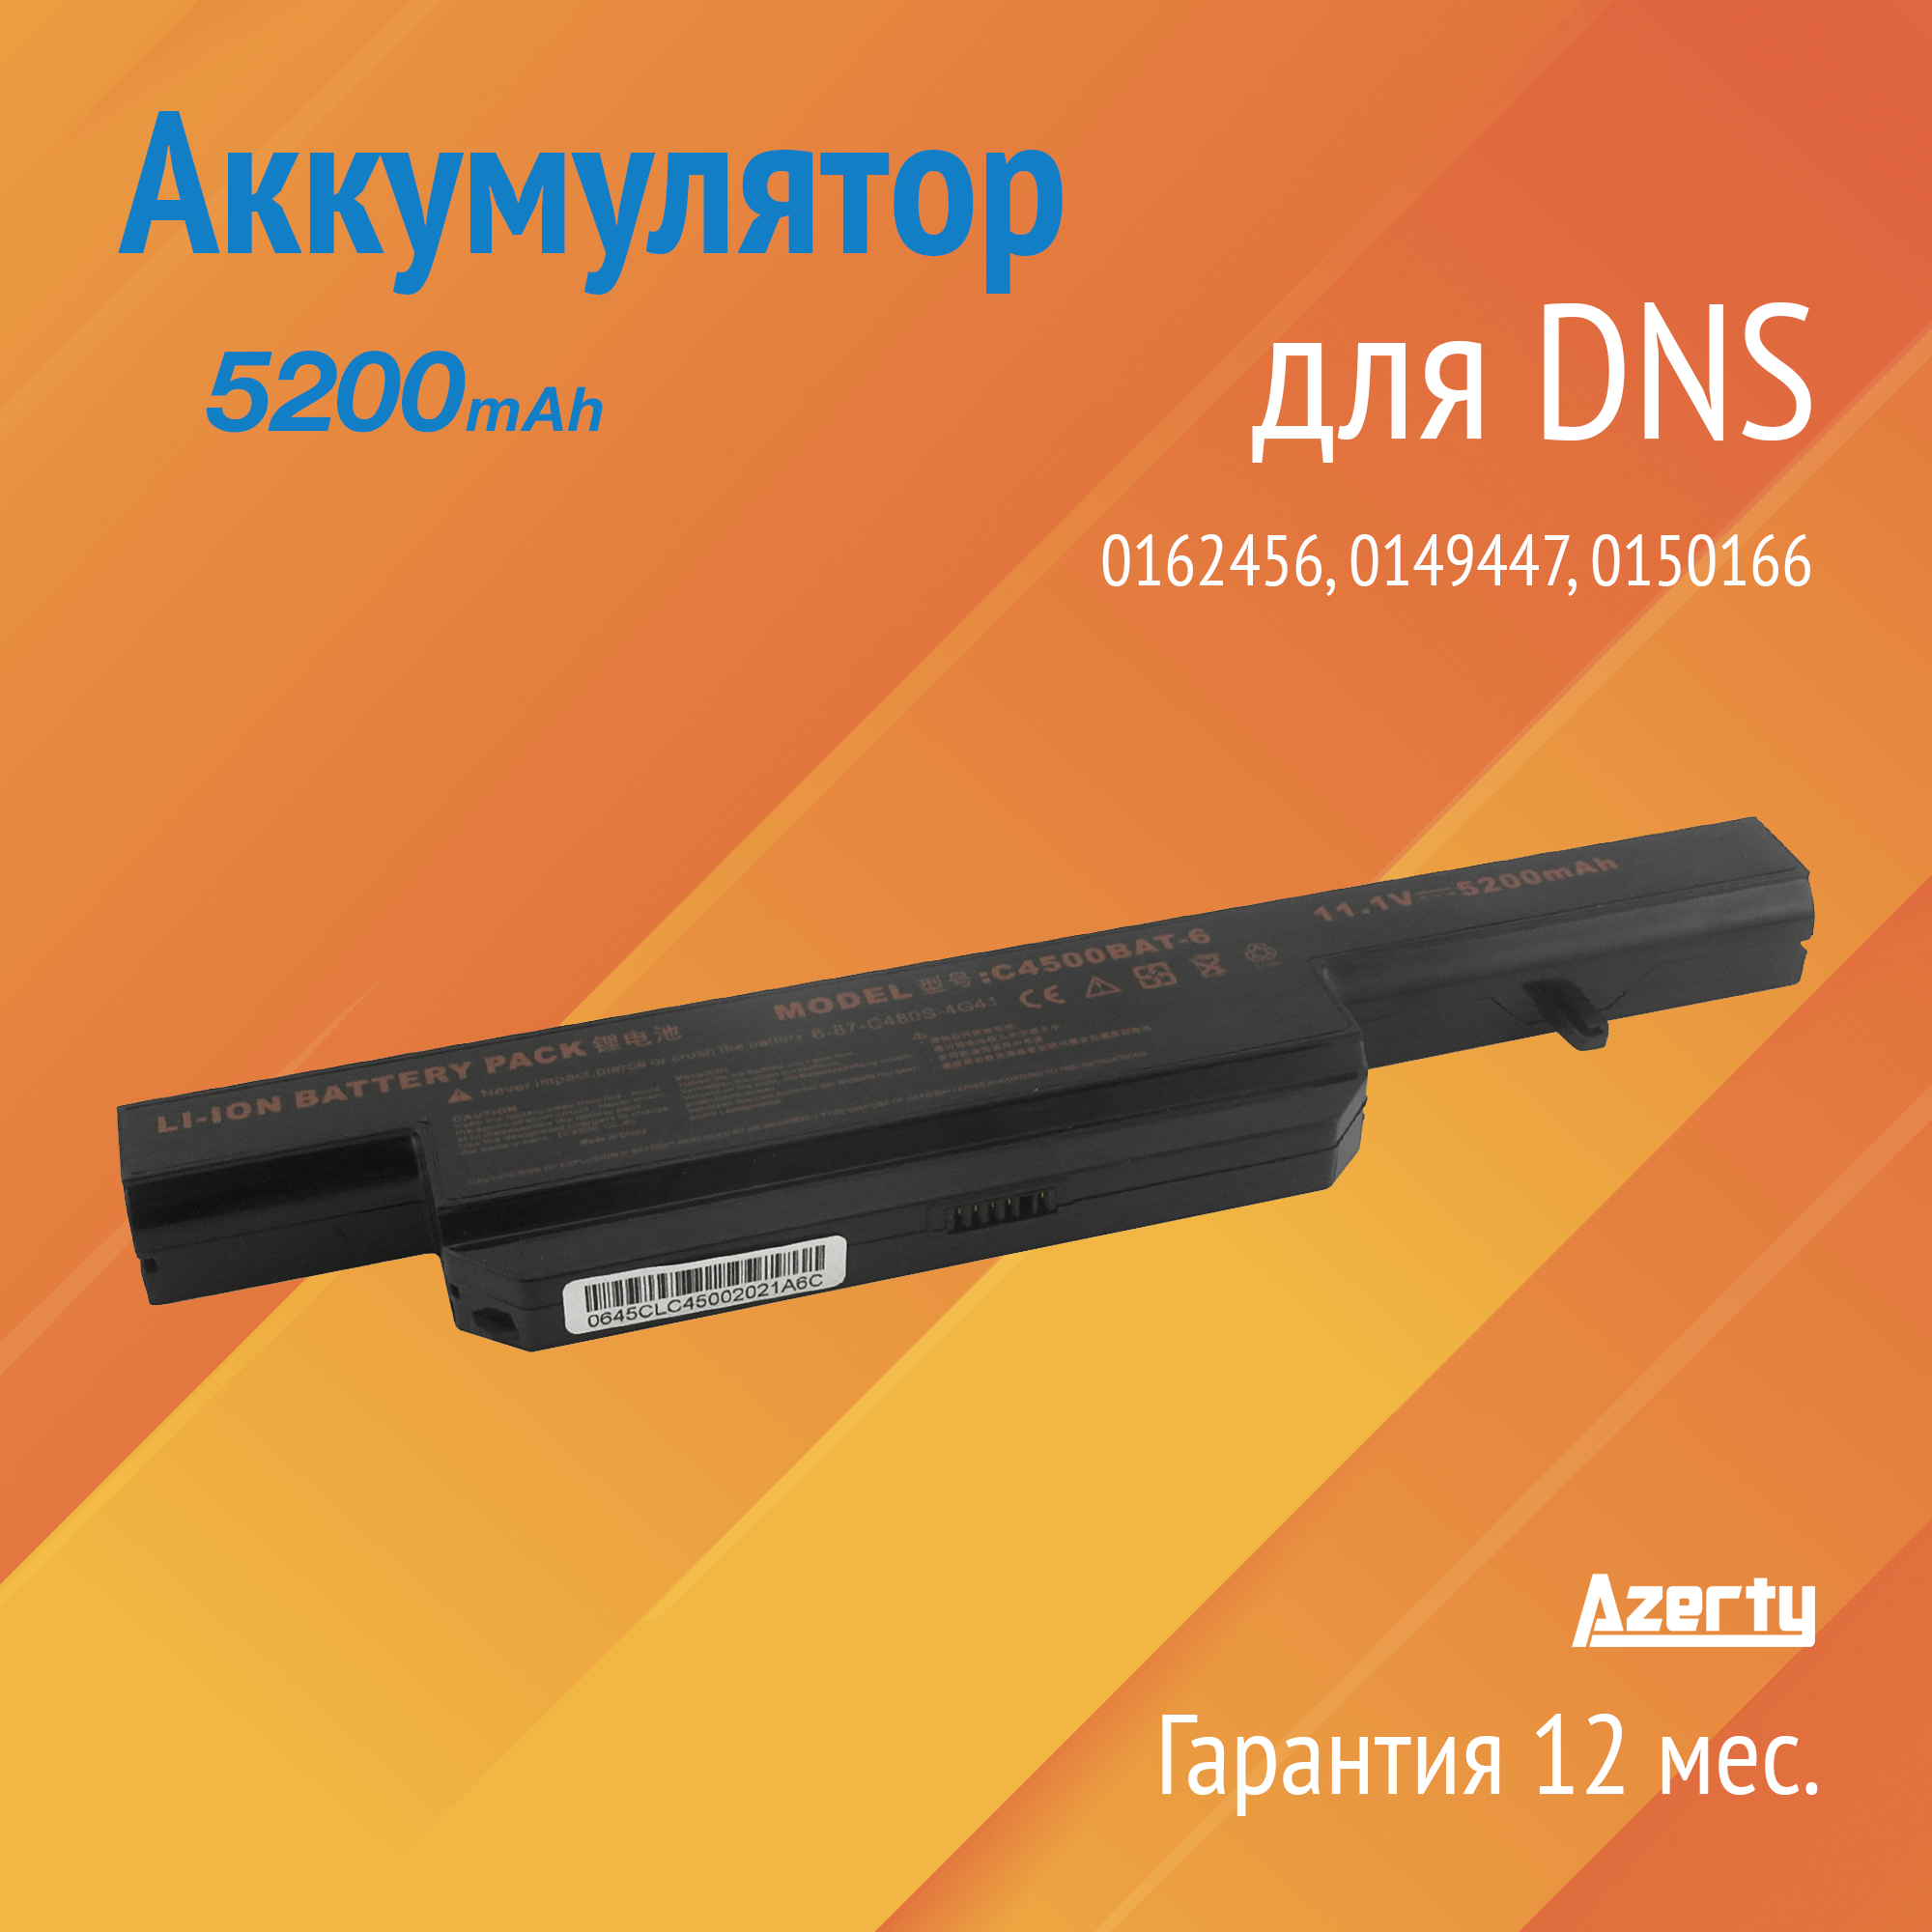 Аккумулятор C4500BAT6 для DNS 0162456 / 0149447 / 0150166 (CS-CLM450NB 6-87-C480S-4G41)